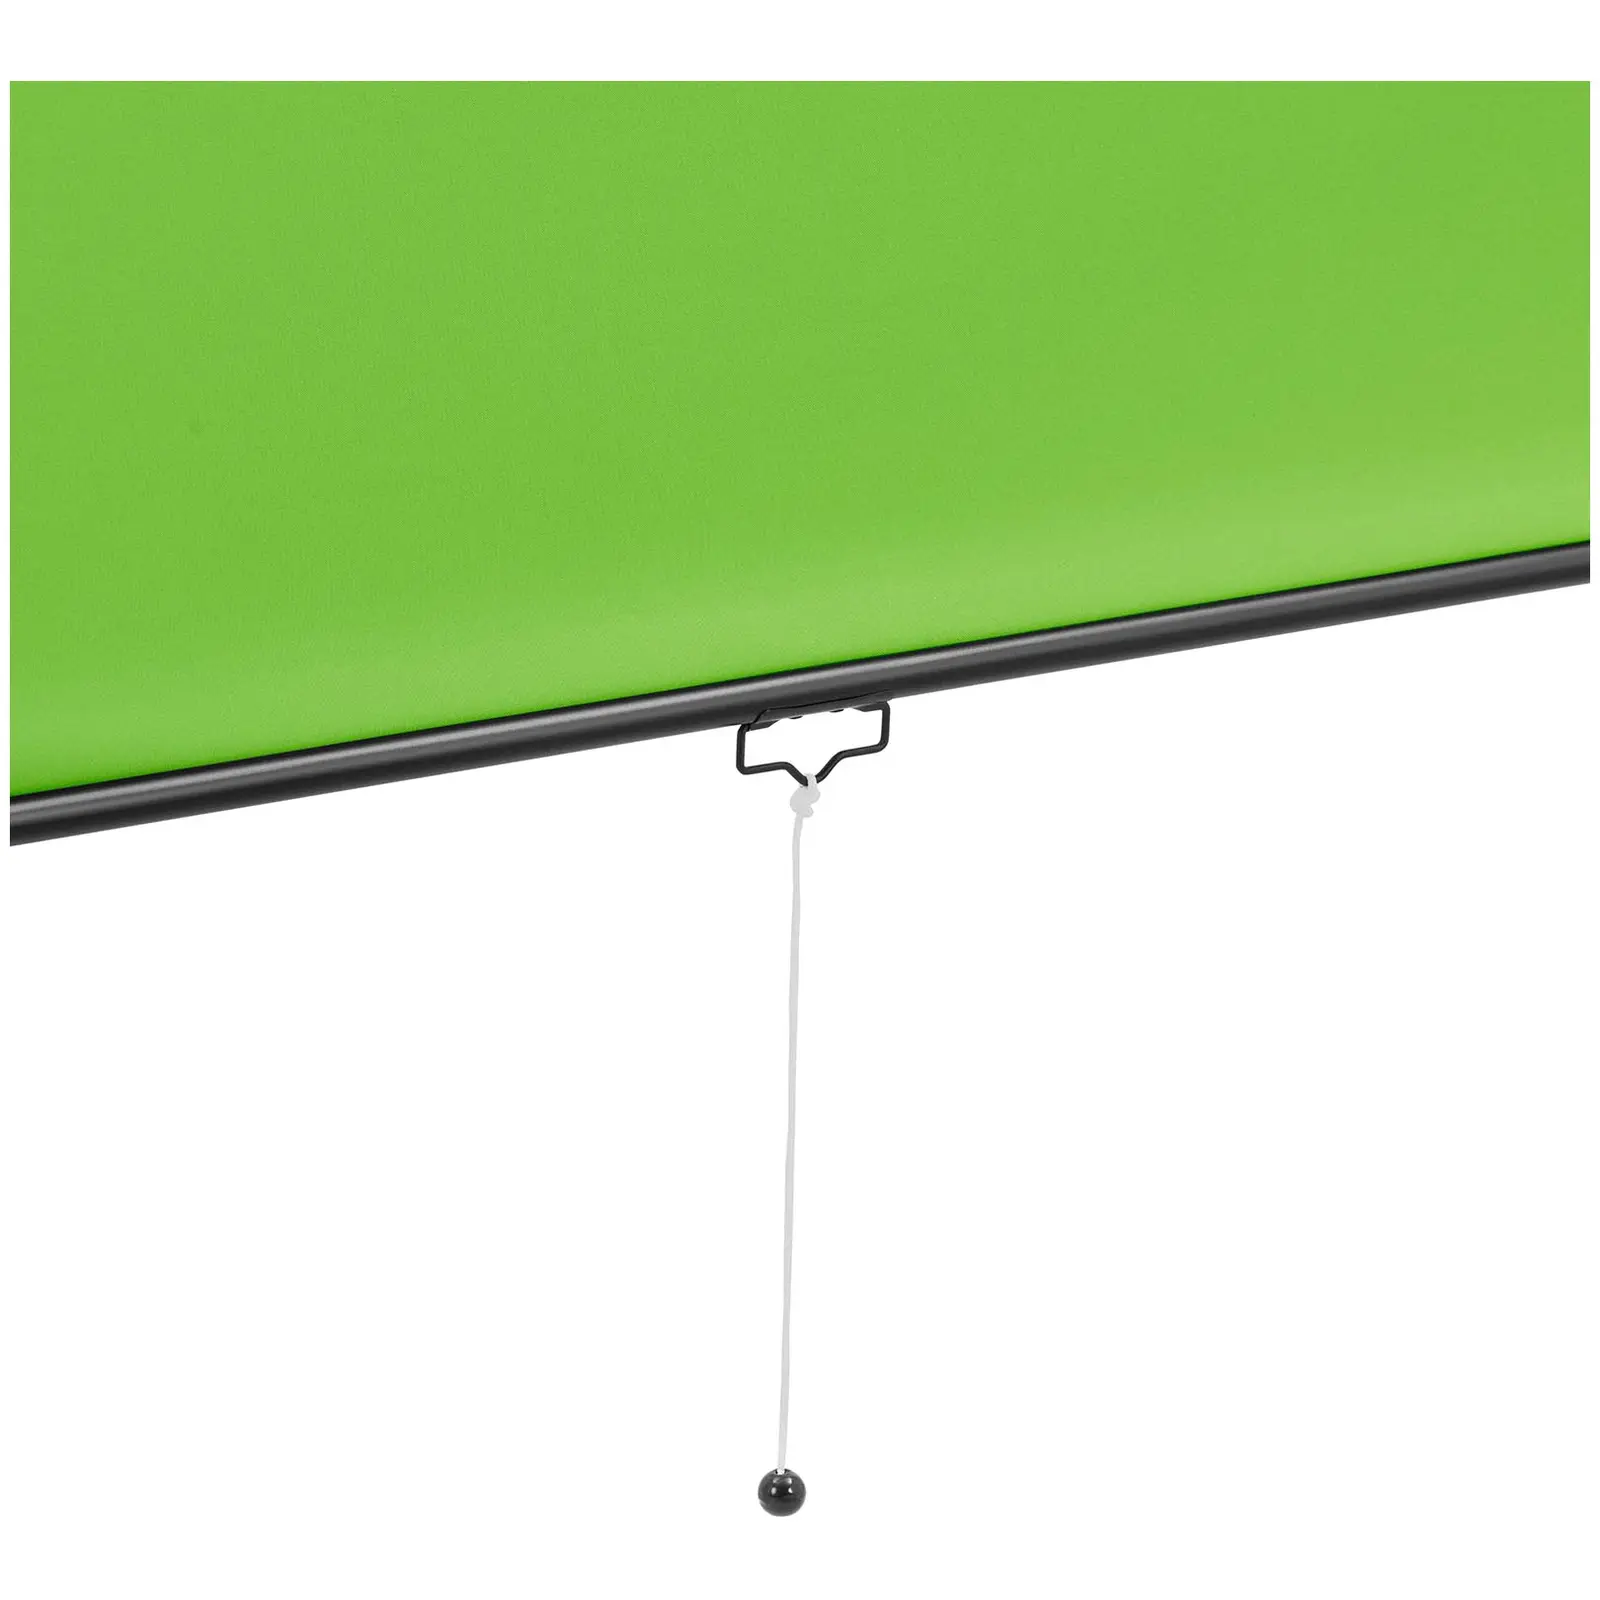 Green Screen - Rollo - für Wand und Decke - 84" - 2060 x 1813 mm